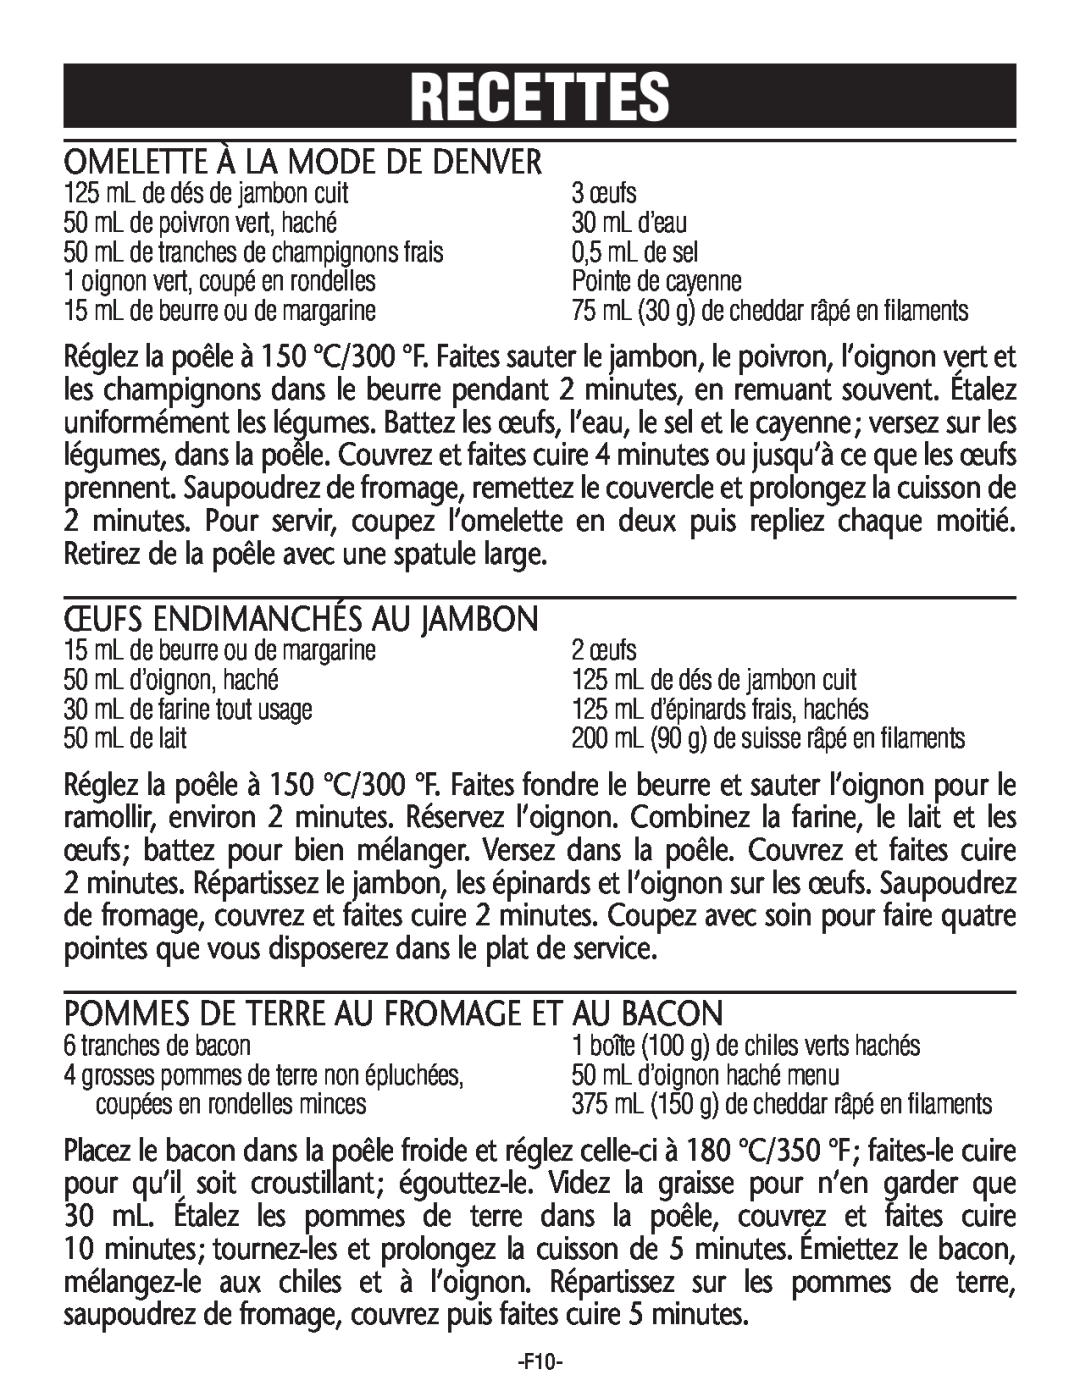 Rival S16SG-CN Omelette À La Mode De Denver, Œufs Endimanchés Au Jambon, Pommes De Terre Au Fromage Et Au Bacon, Recettes 